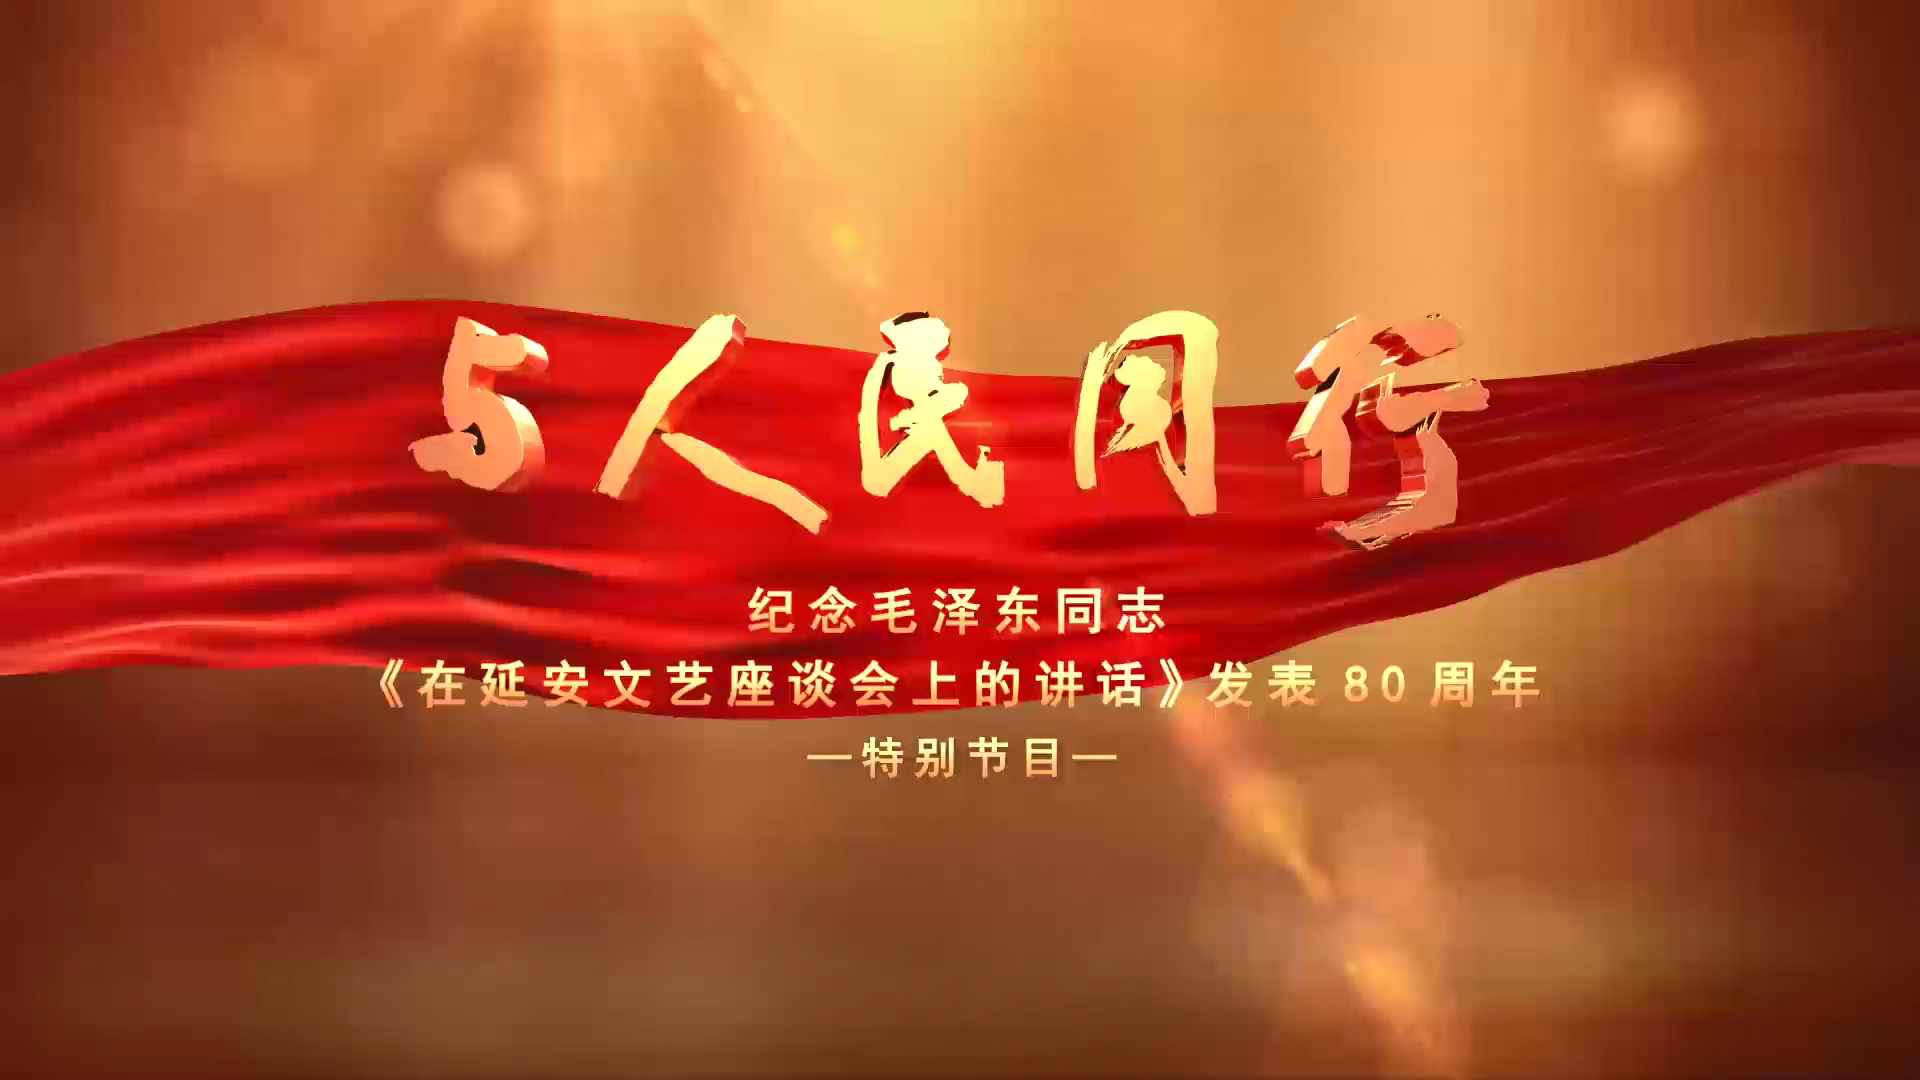 与人民同行--纪念毛泽东同志《在延安文艺座谈会上的讲话》发表80周年特别节目